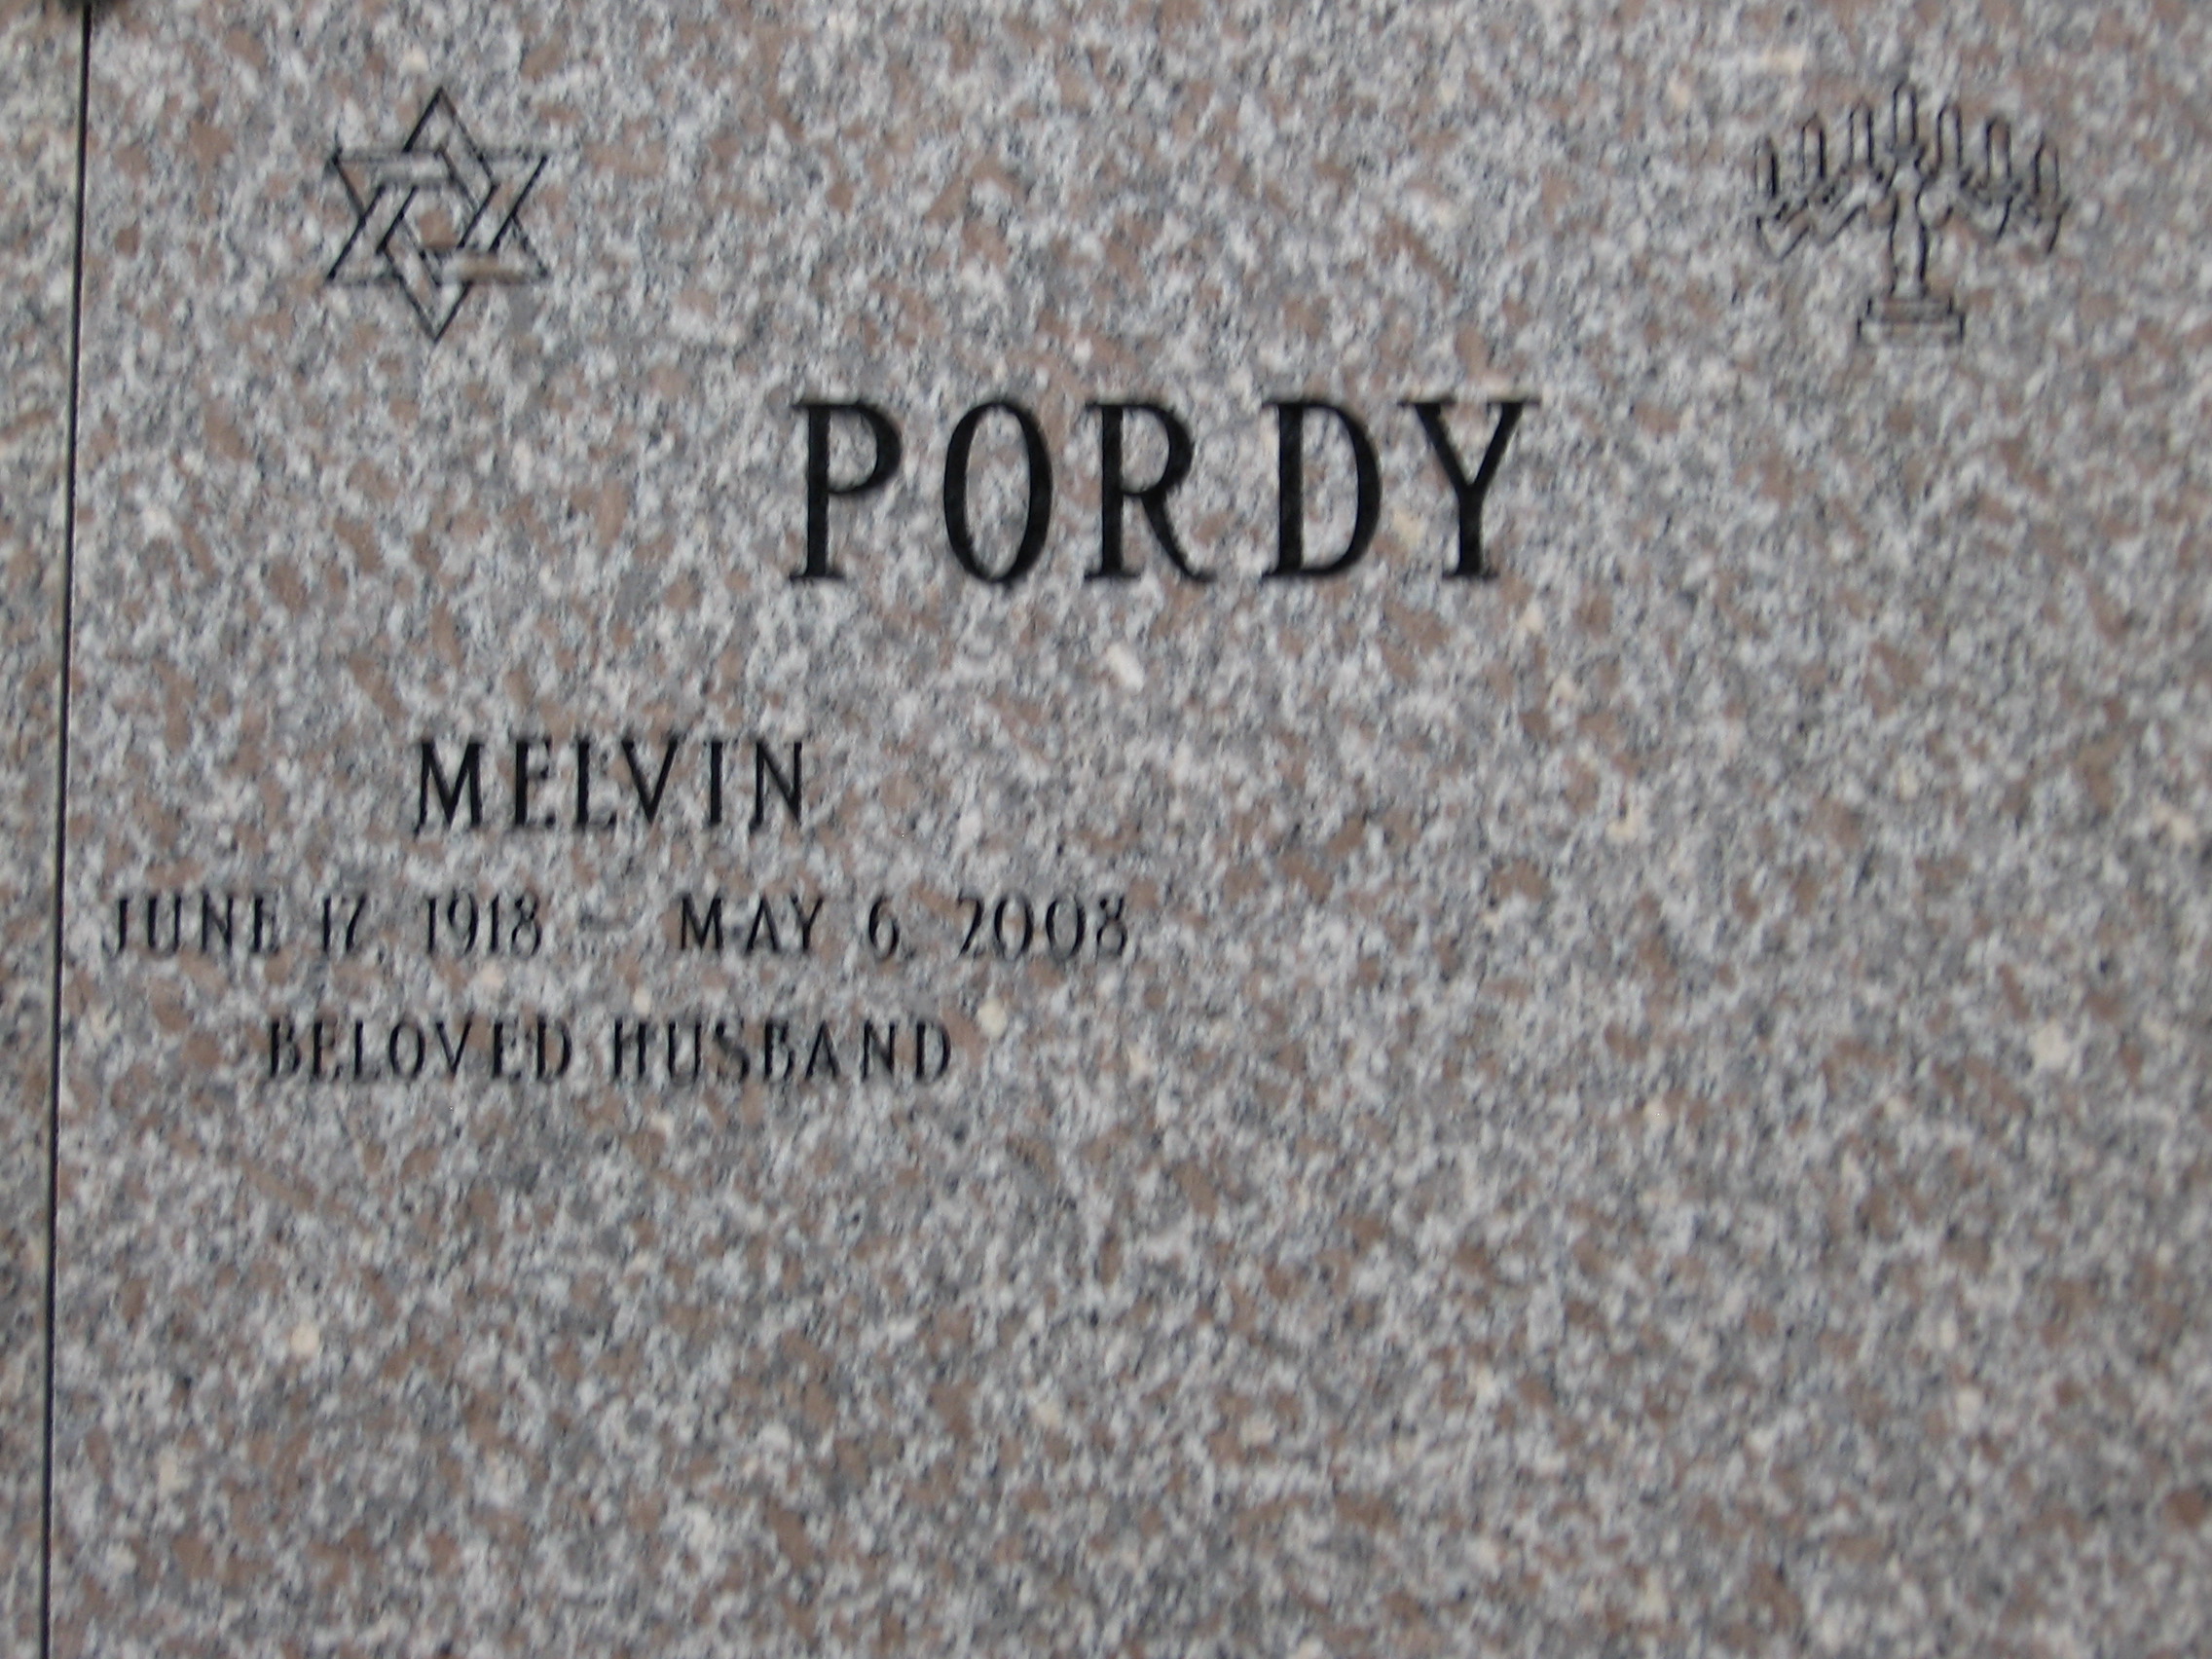 Melvin Pordy